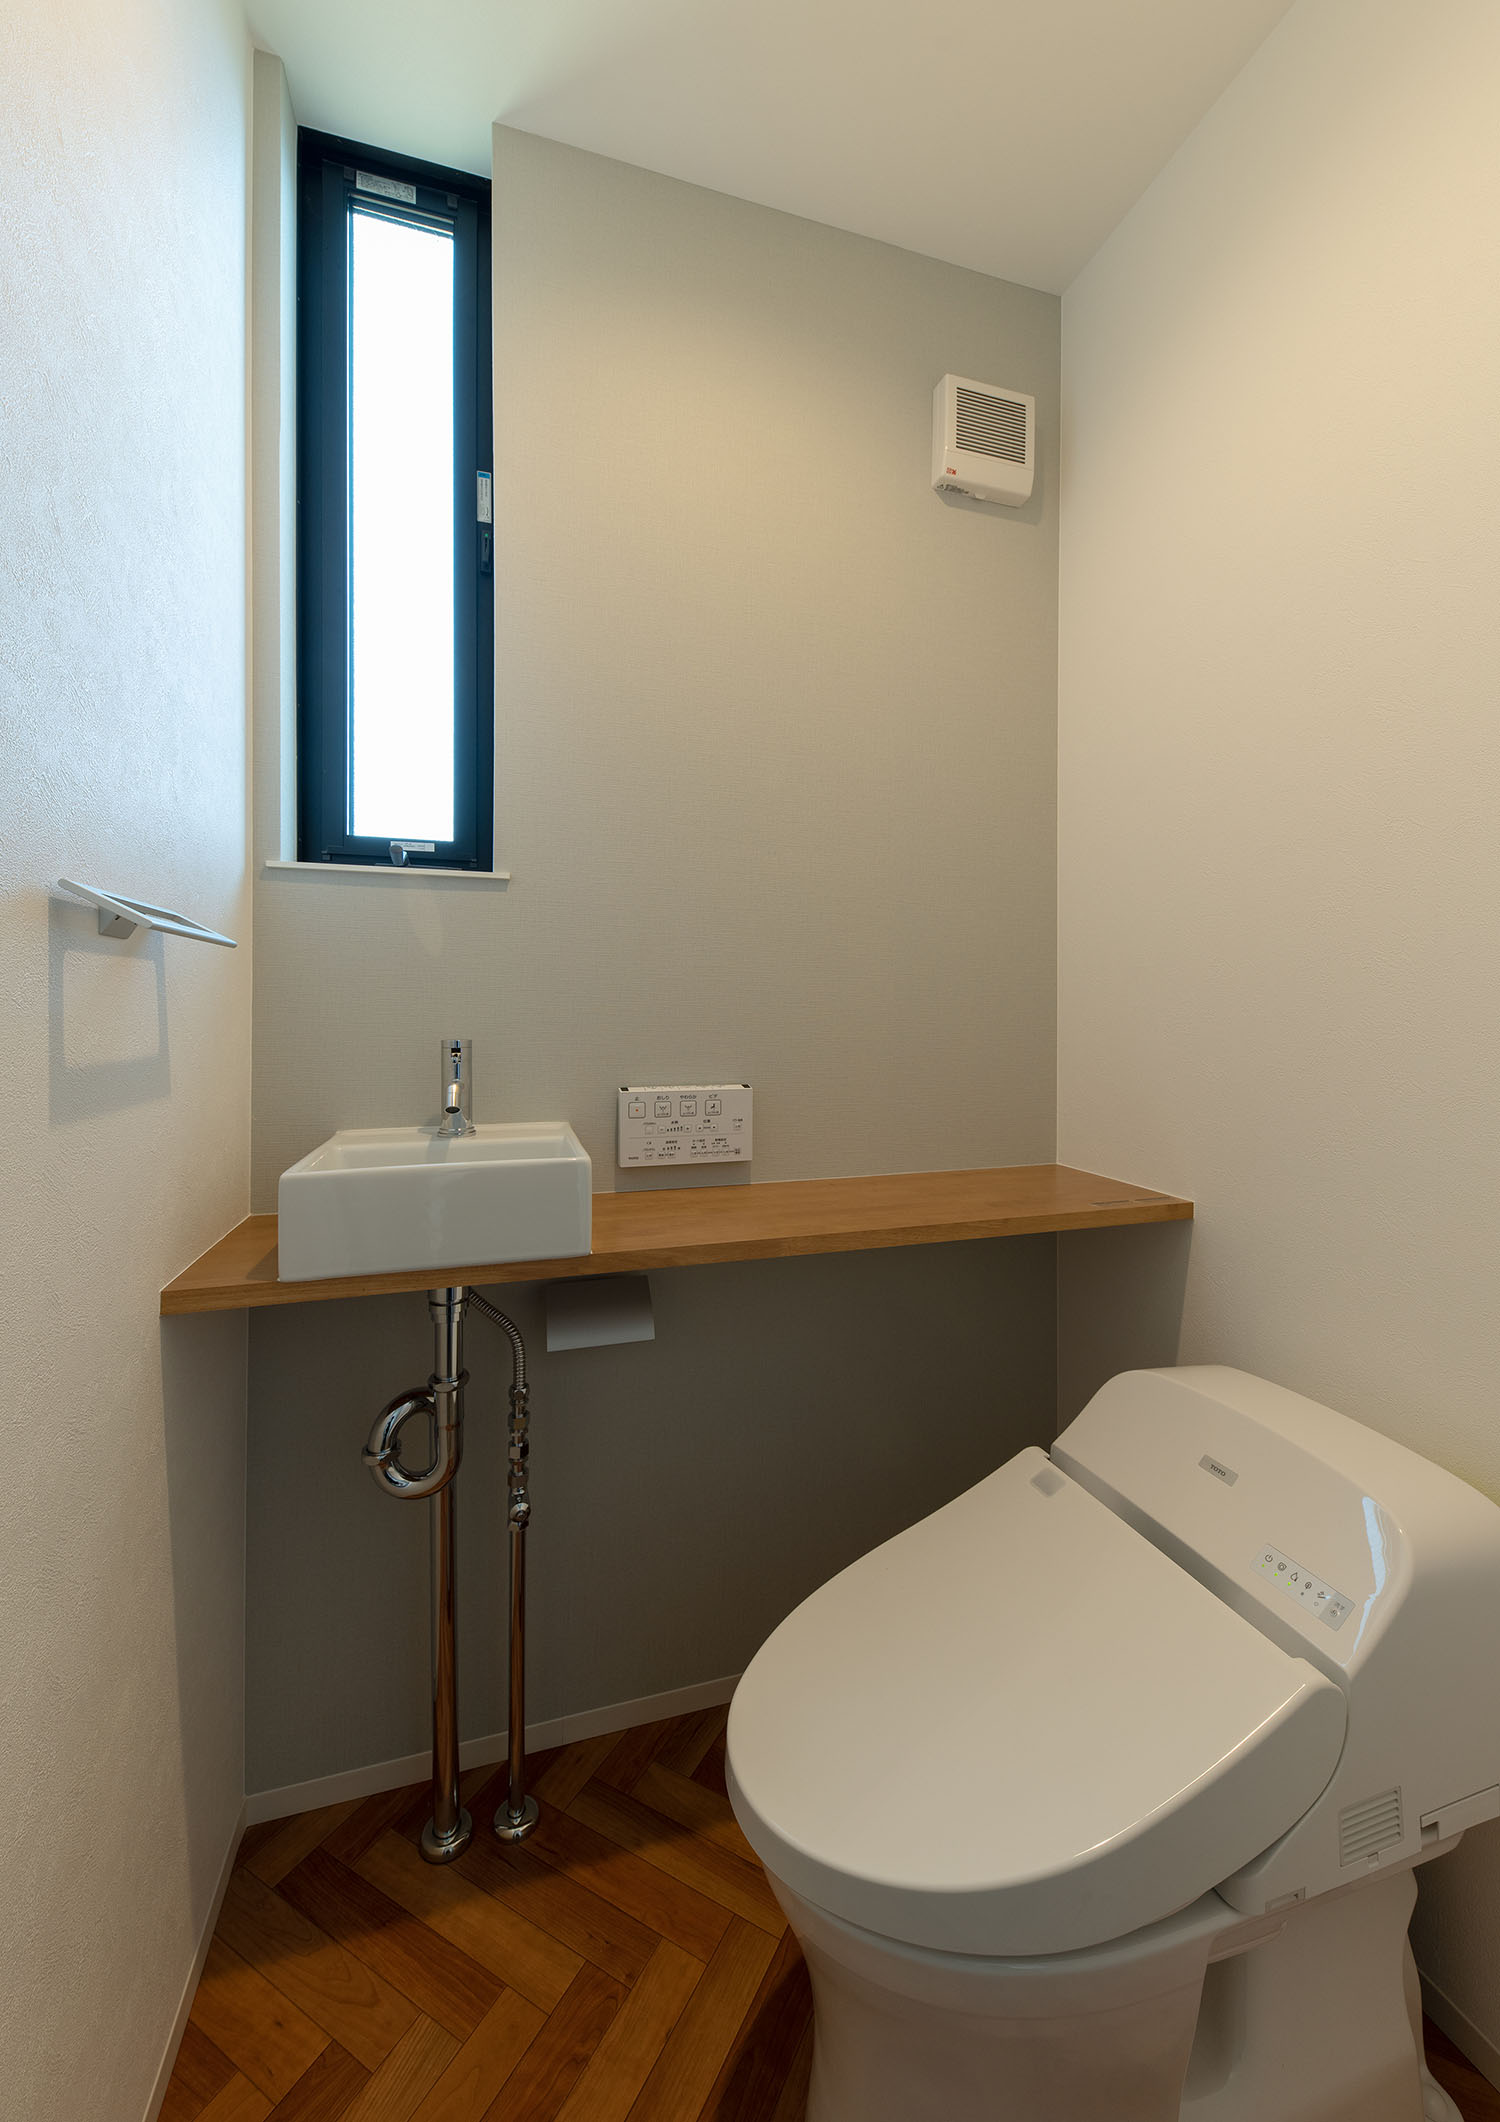 スリット窓と薄型手洗いがあるヘリンボーン柄の床のトイレ・デザイン住宅